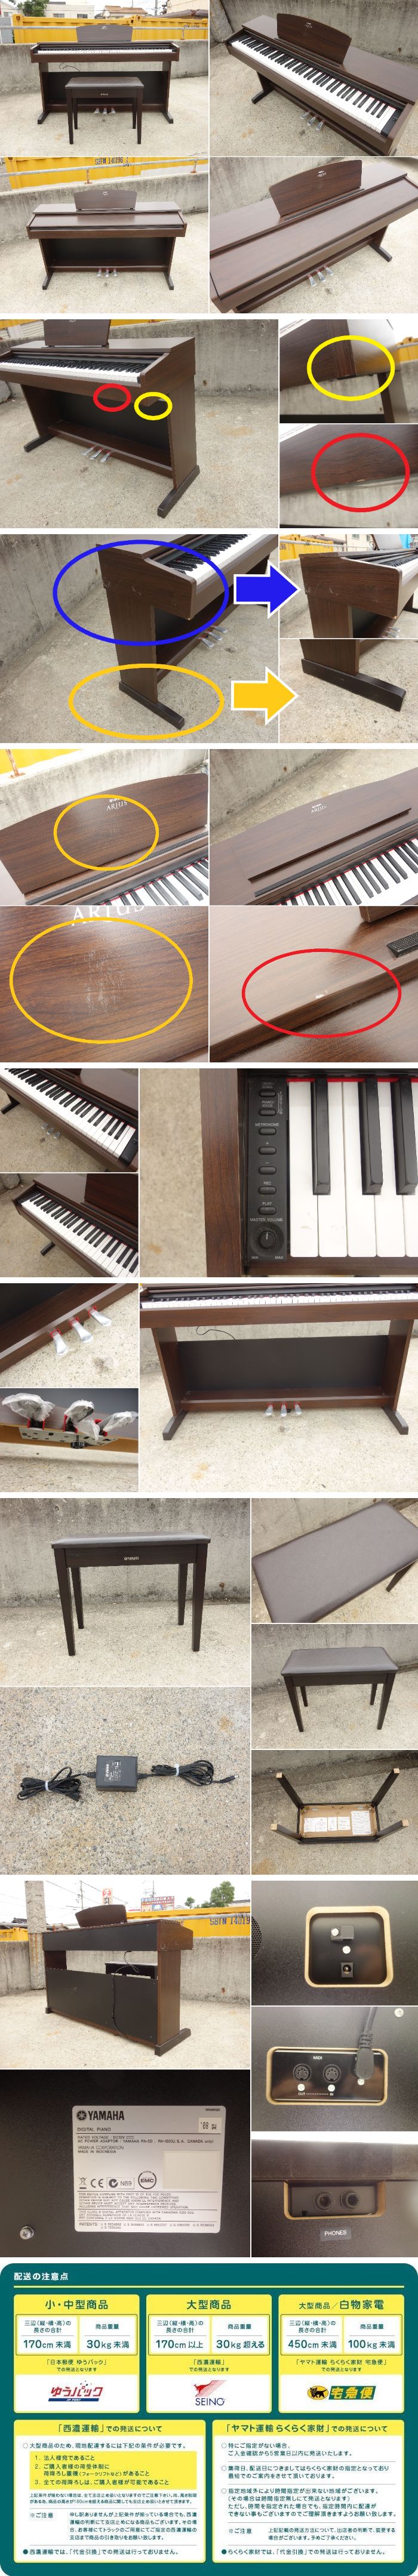 低価お買い得D▼ヤマハ デジタルピアノ 電子ピアノ キーボード アリウス ARIUS 88鍵盤 椅子 ダークアルダー調 YDP-140 (30729) ヤマハ